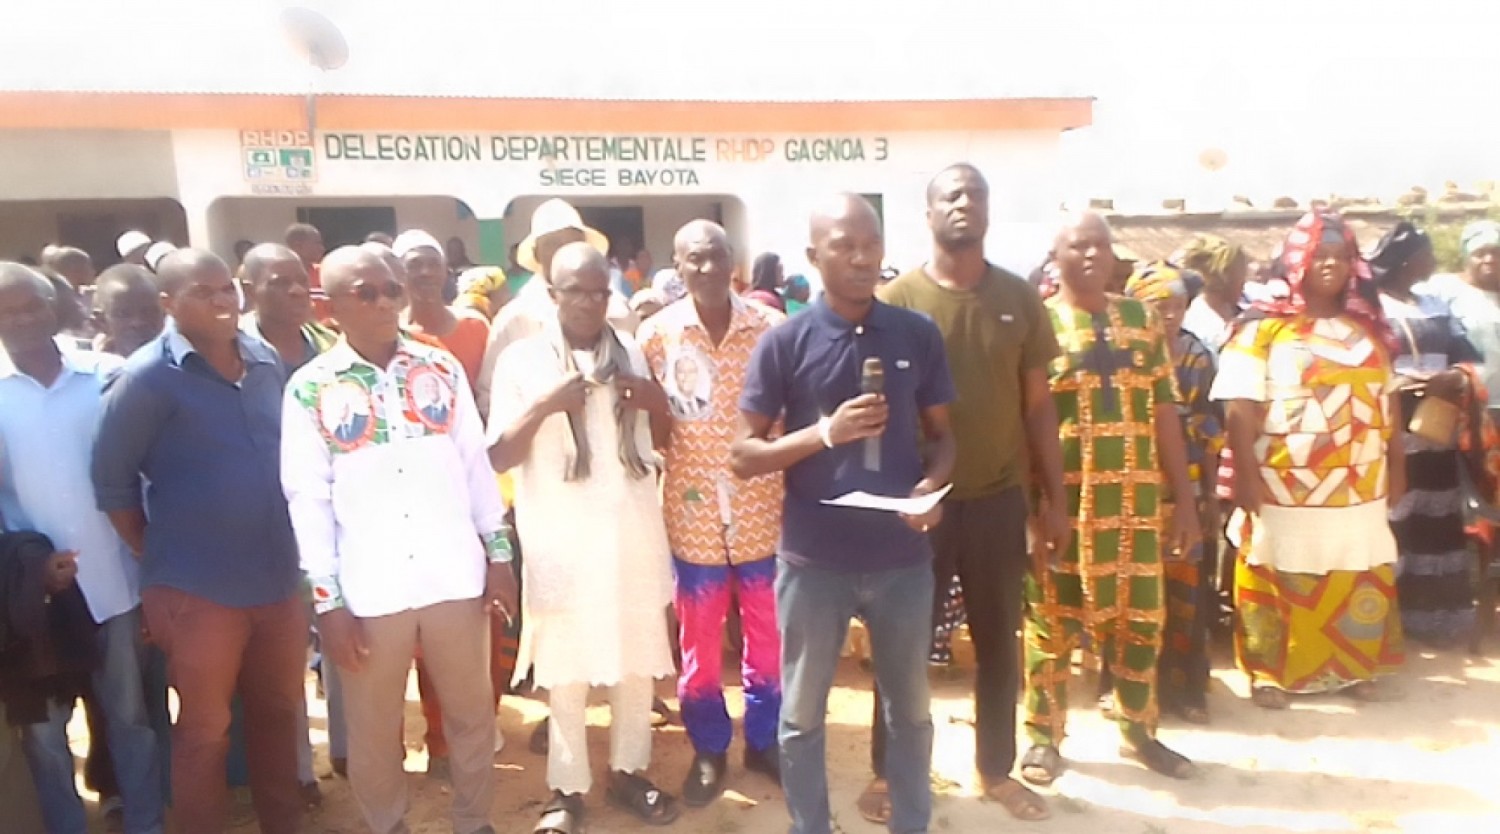 Côte d'Ivoire : Des militants RHDP plaident pour l'érection de Bayota en Commune afin d'assurer la victoire de leur parti aux élections à venir